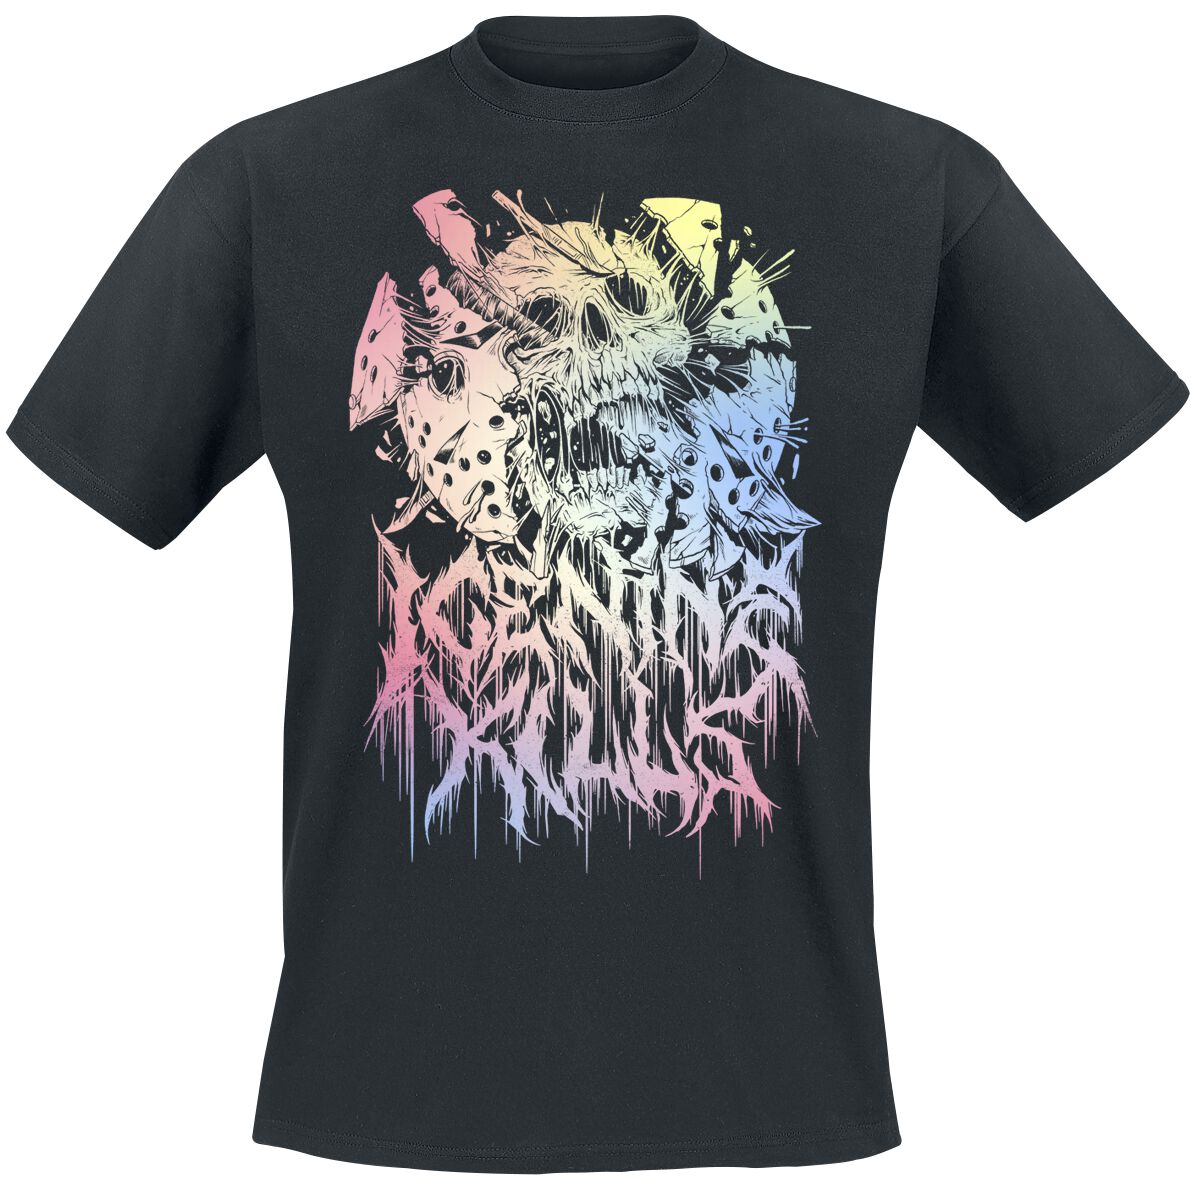 Ice Nine Kills T-Shirt - Pastel Skull - M bis 4XL - für Männer - Größe M - schwarz  - Lizenziertes Merchandise!